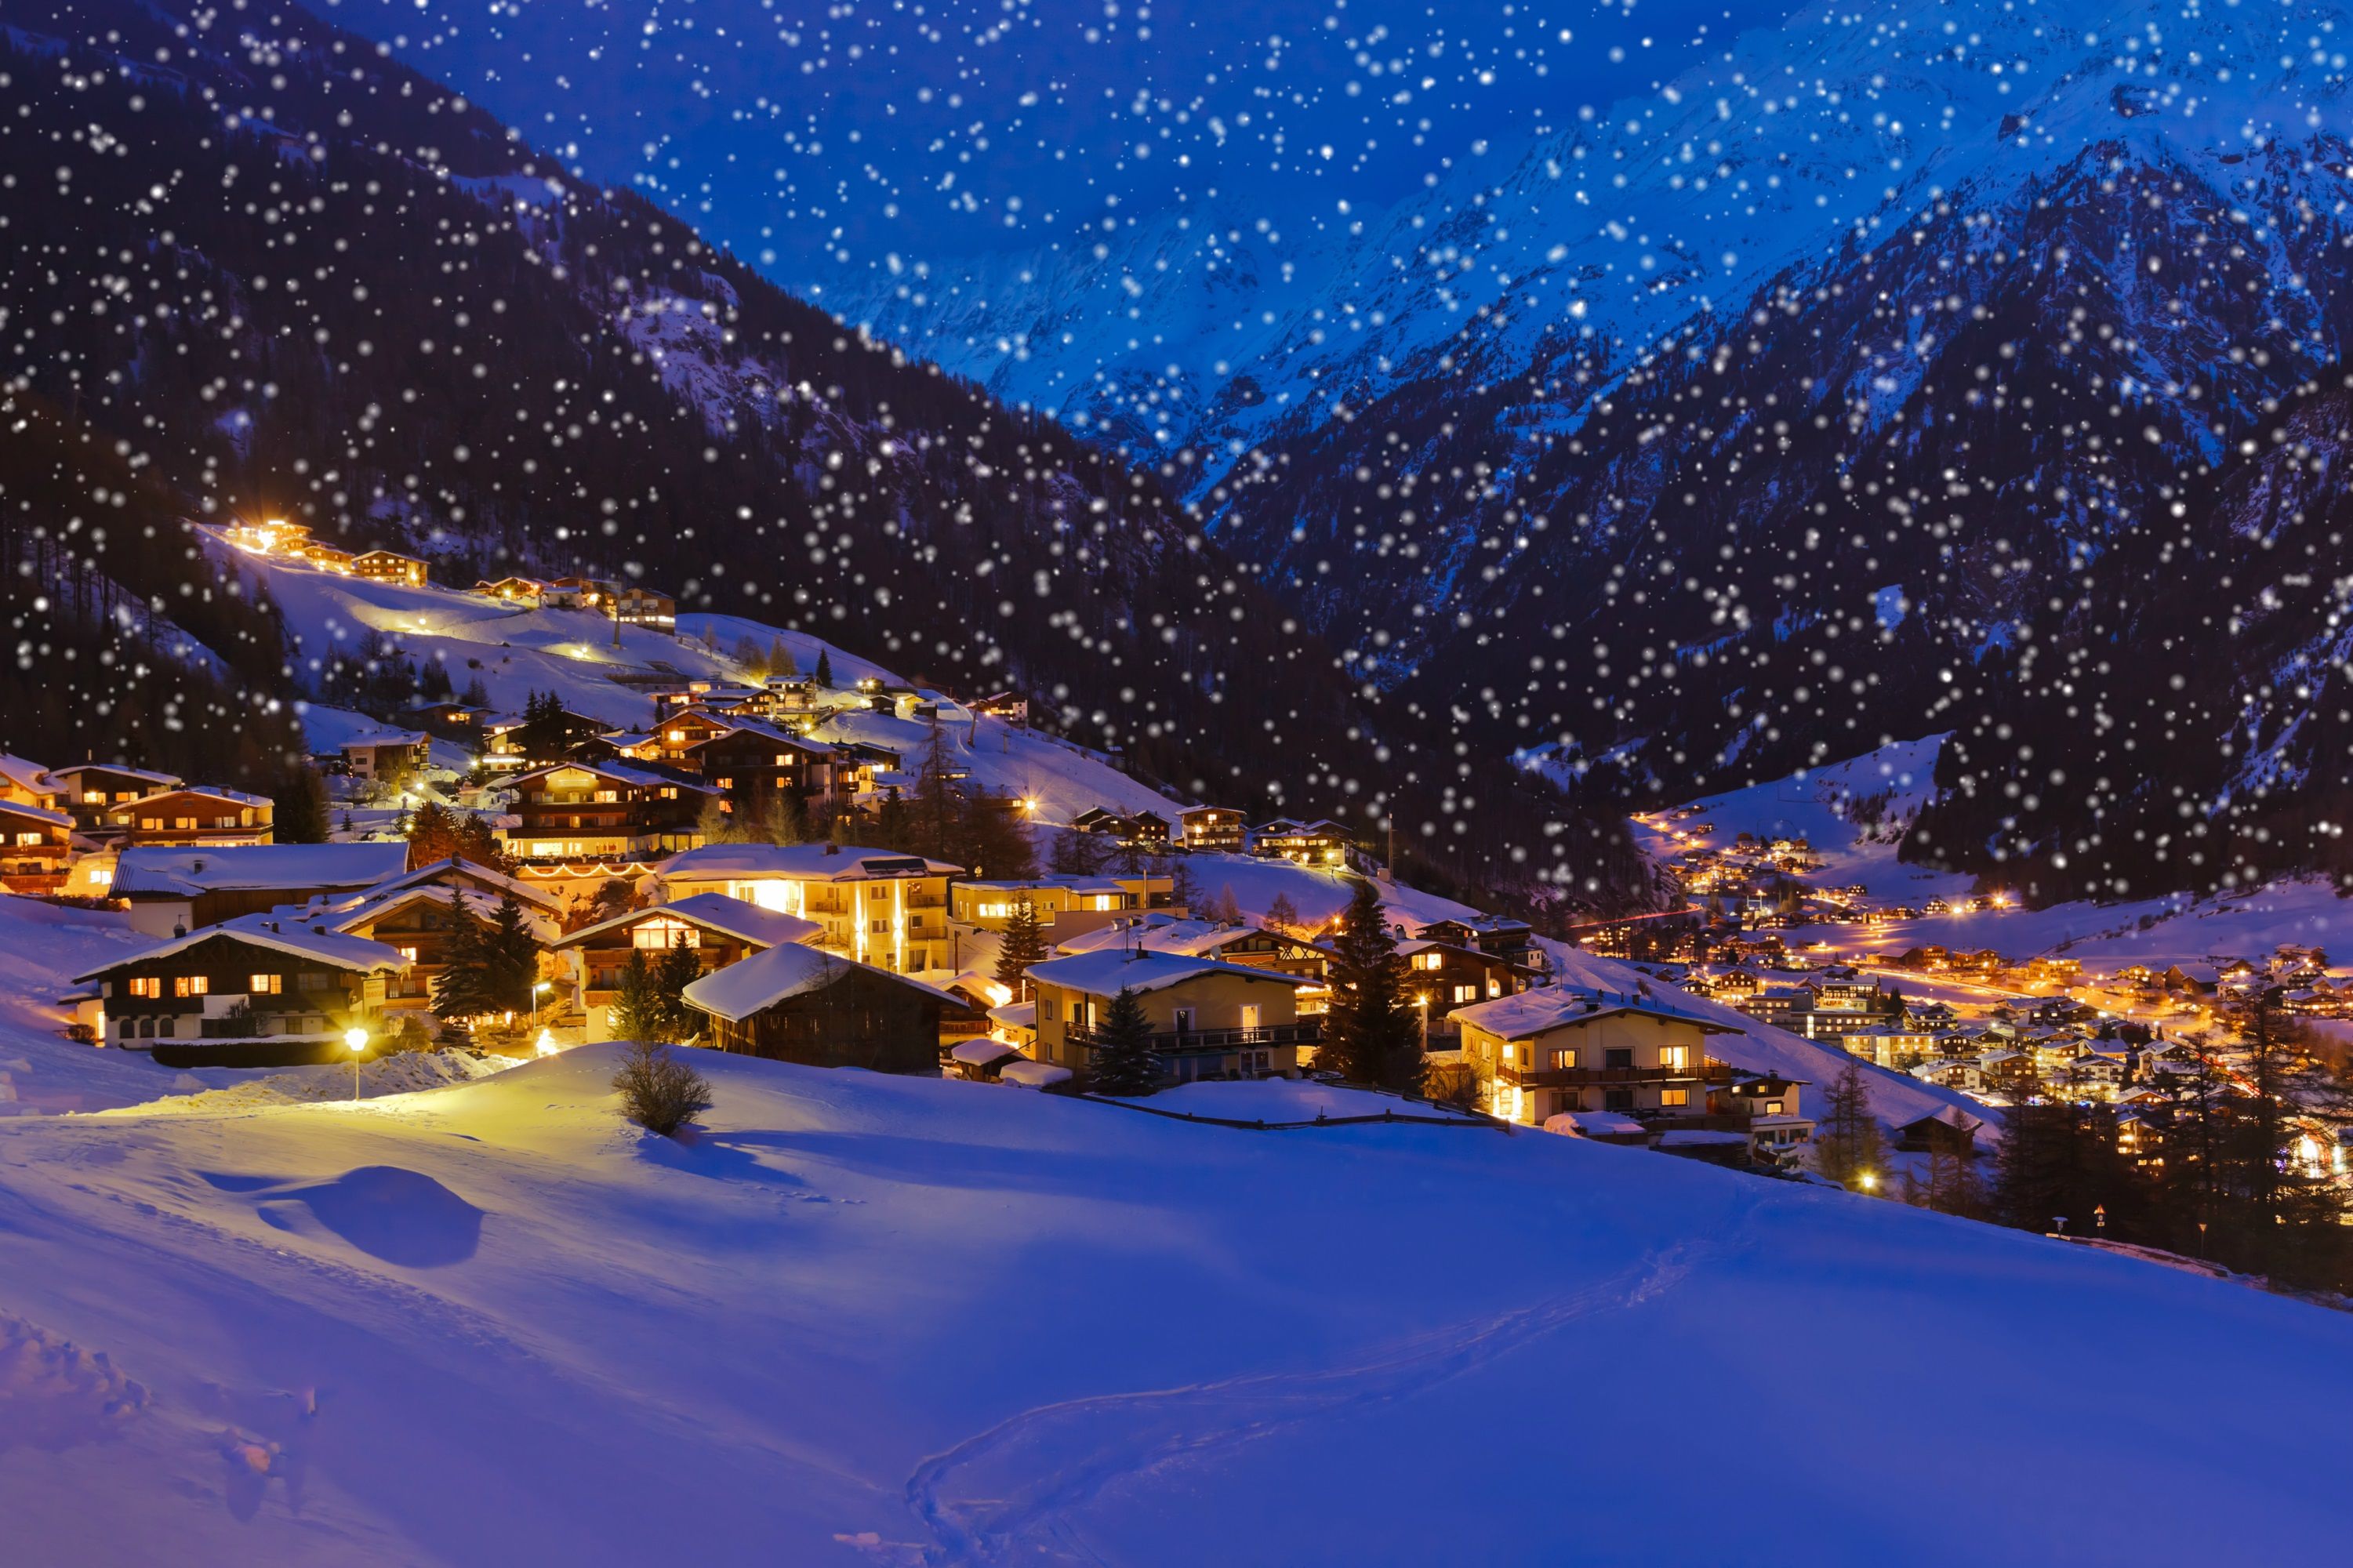 4 Luxury Ski Resorts Ideal For Christmas Break